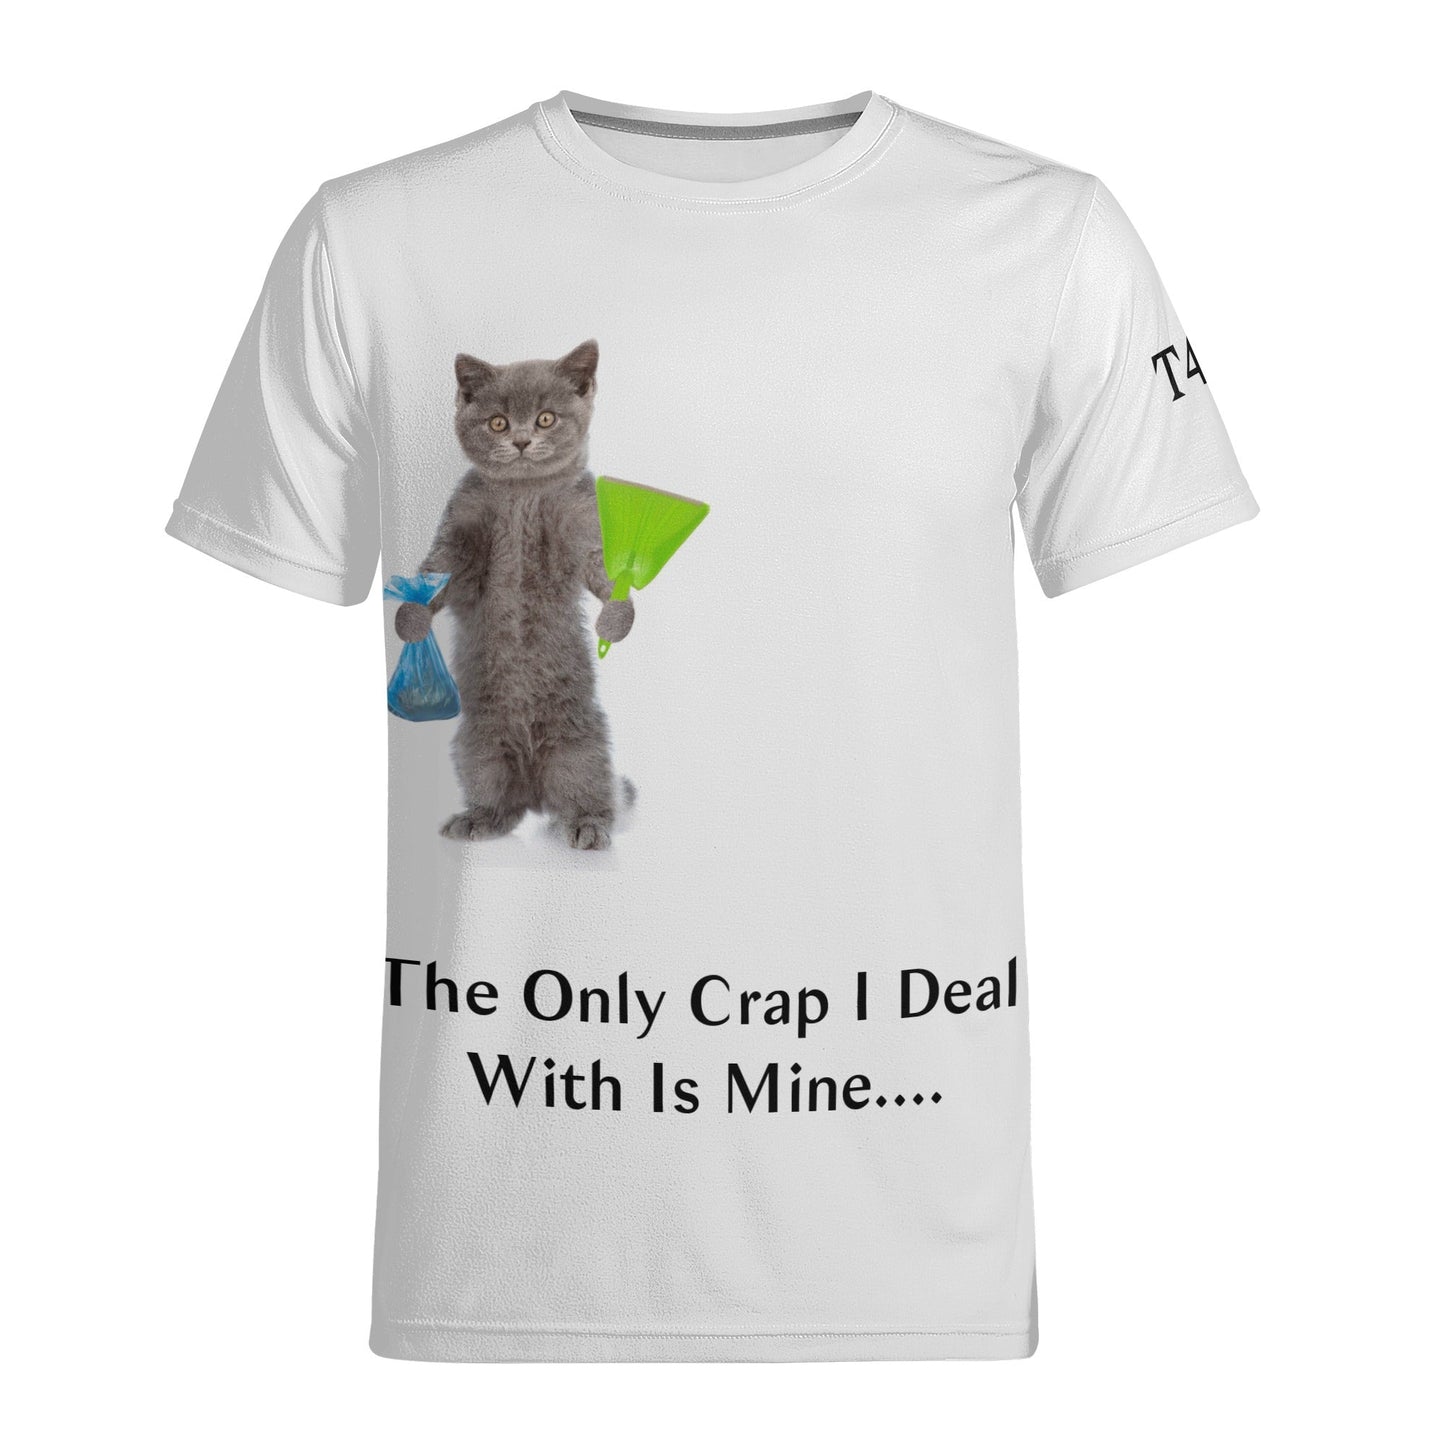 T4x Men's Only My Crap T-shirt - T4x Quadruple Love